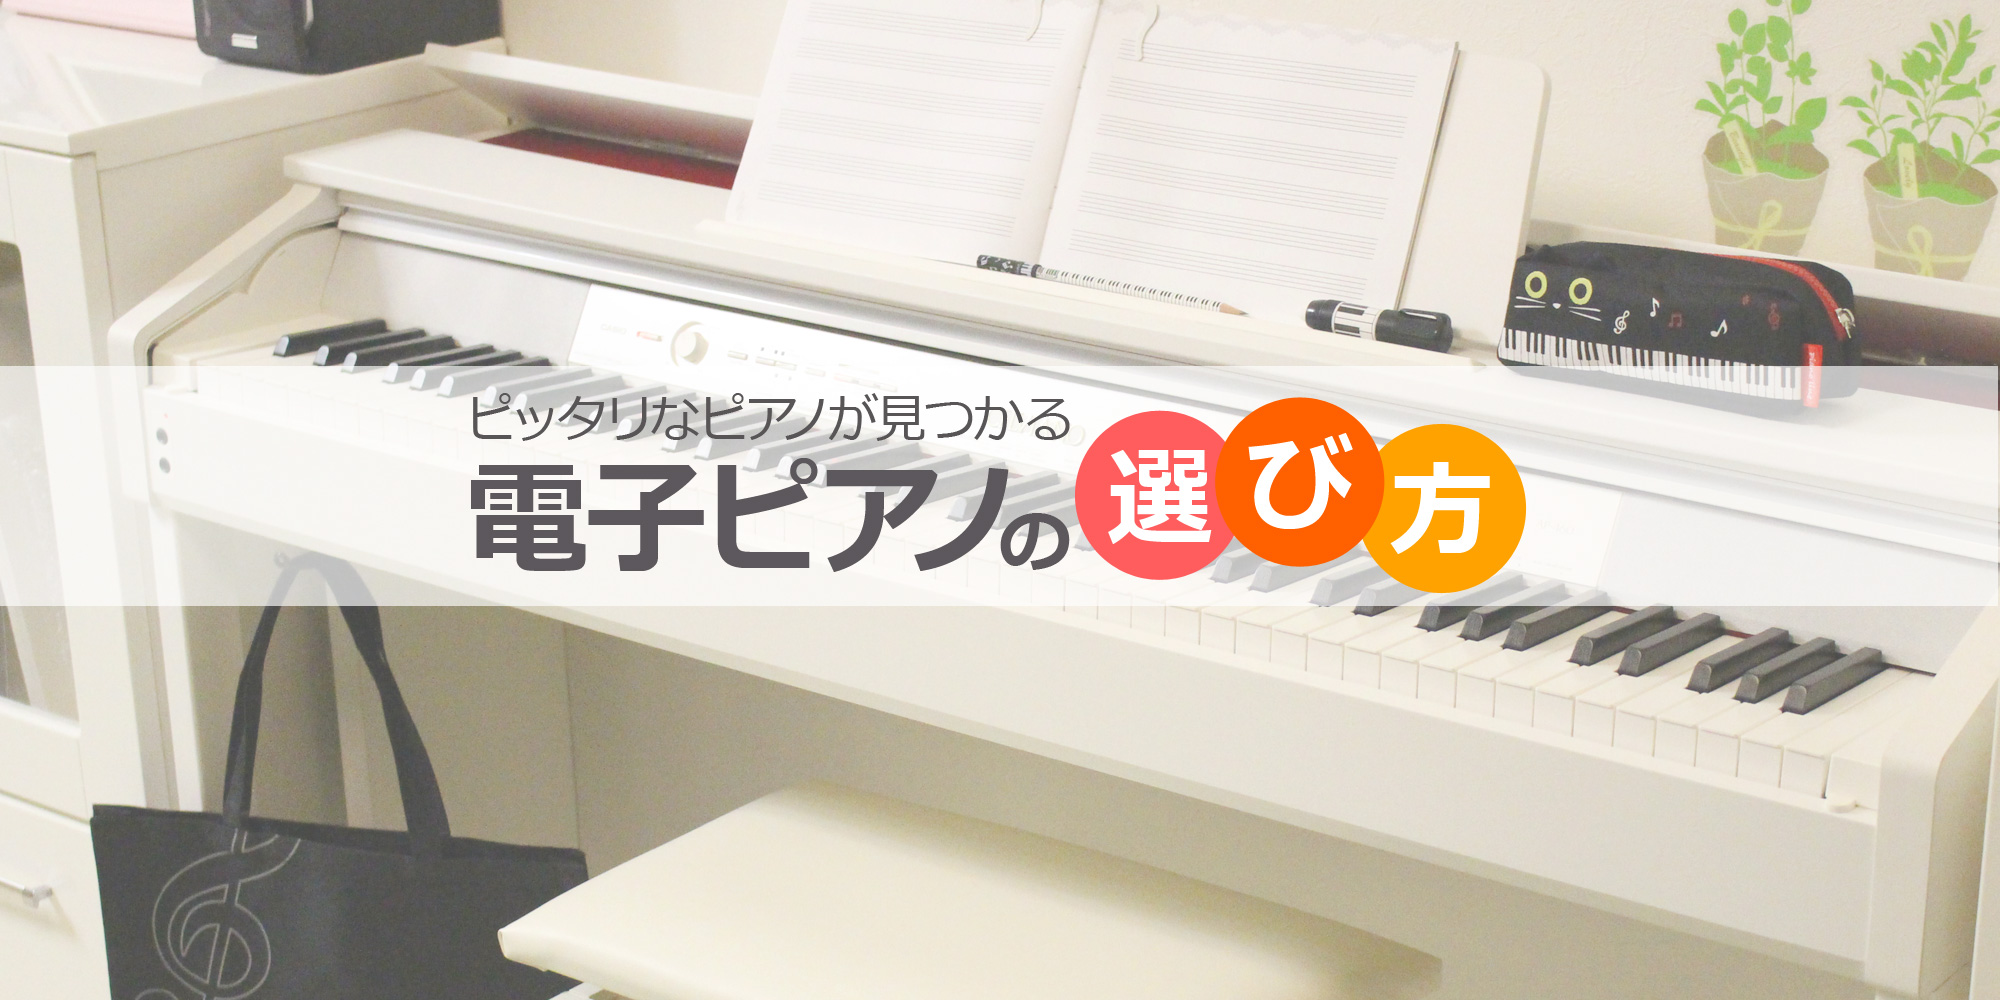 ピッタリなピアノが見つかる『電子ピアノの選び方』【イシバシ楽器】